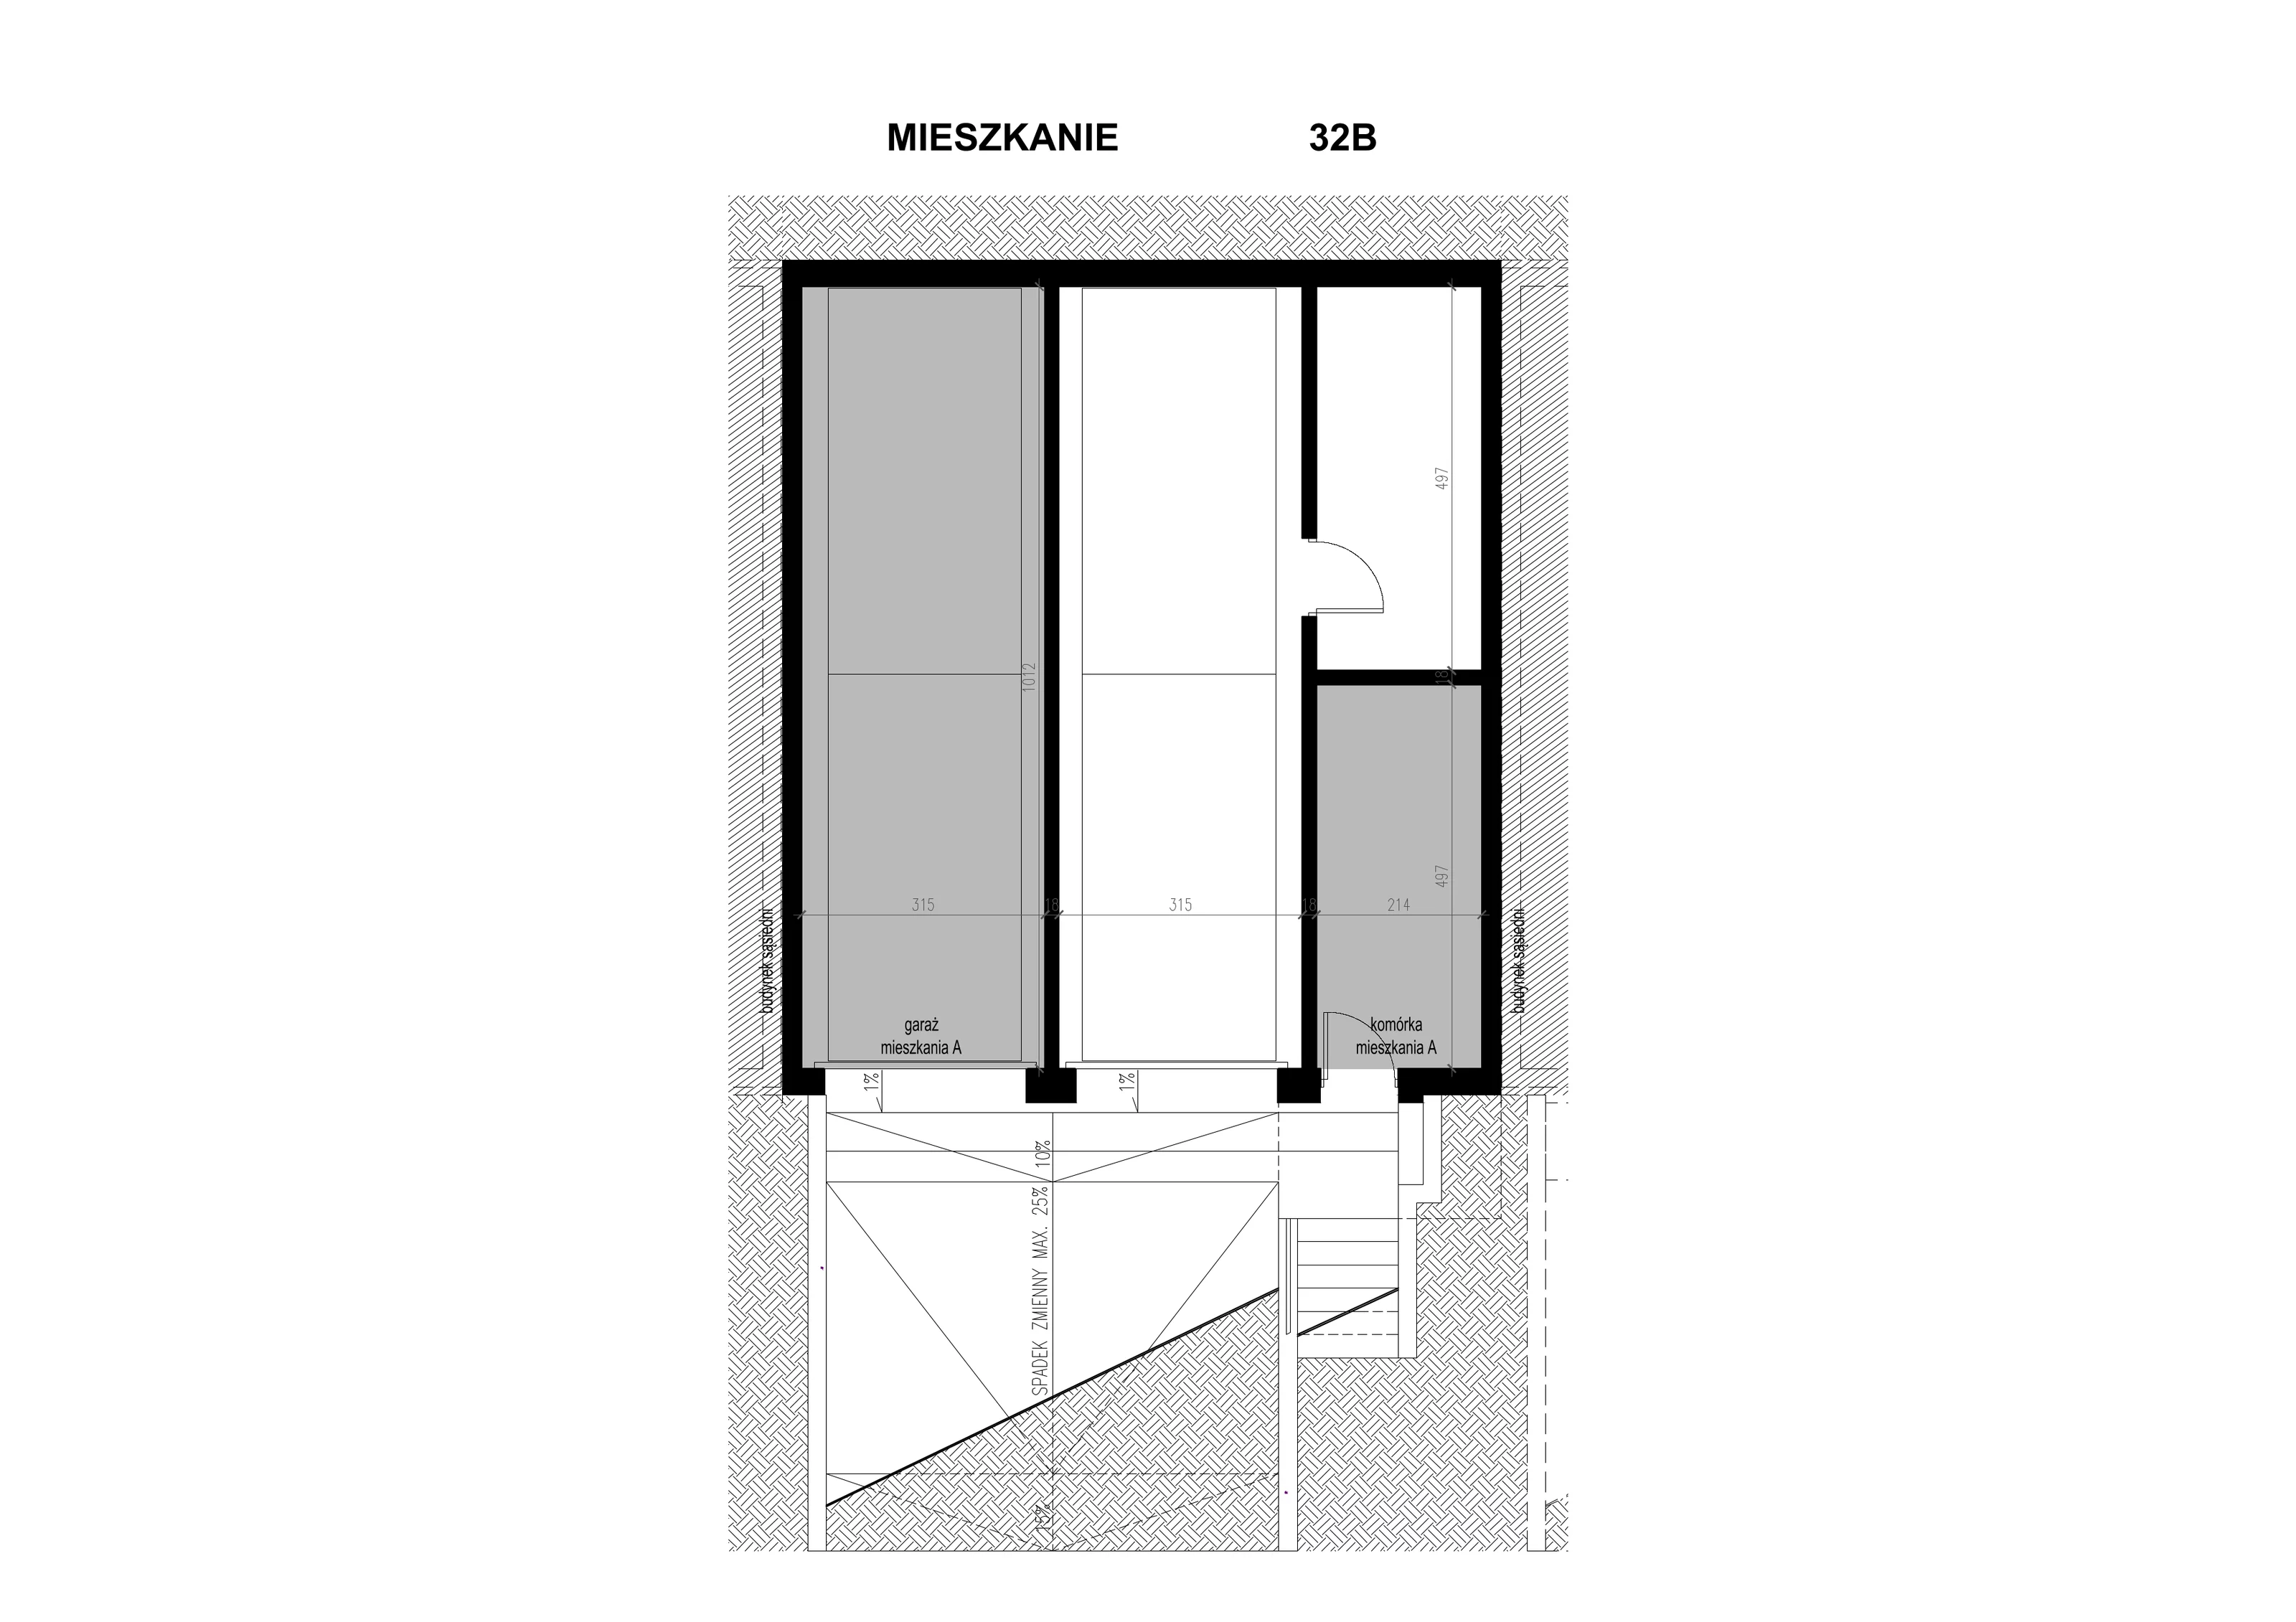 Apartament 82,75 m², piętro 1, oferta nr 1.32B, Osiedle BO, Wrocław, Kowale, ul. Bociana